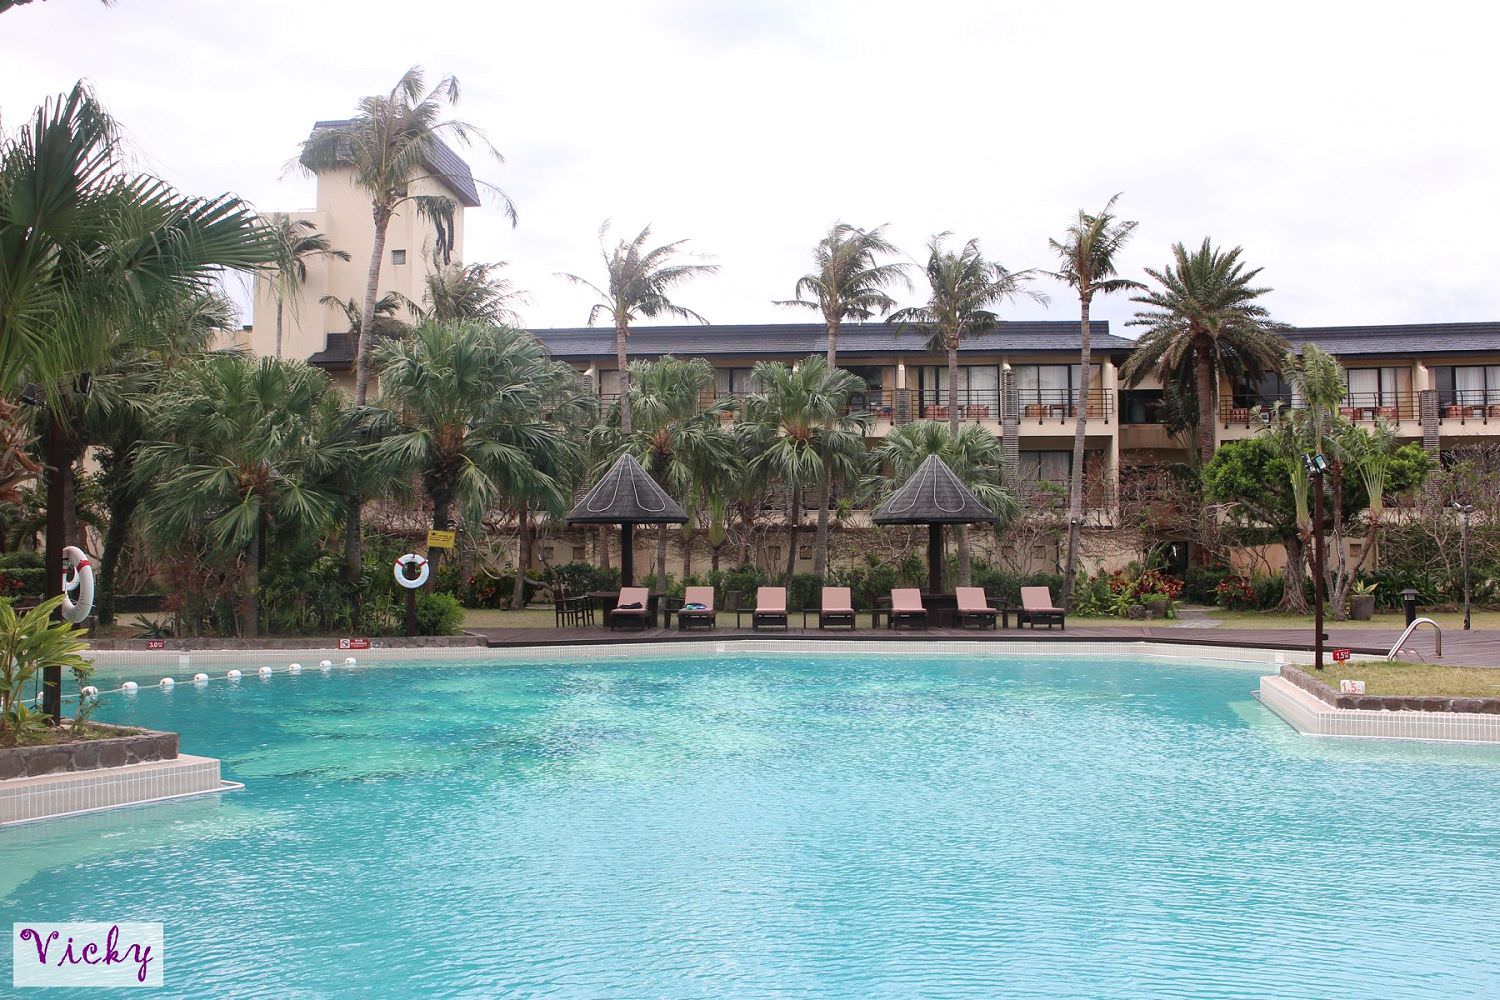 墾丁親子飯店︱凱撒大飯店：南洋風情、椰林泳池、攀岩教室、大遊戲室、椰林小徑、離沙灘近，根本就是度假天堂